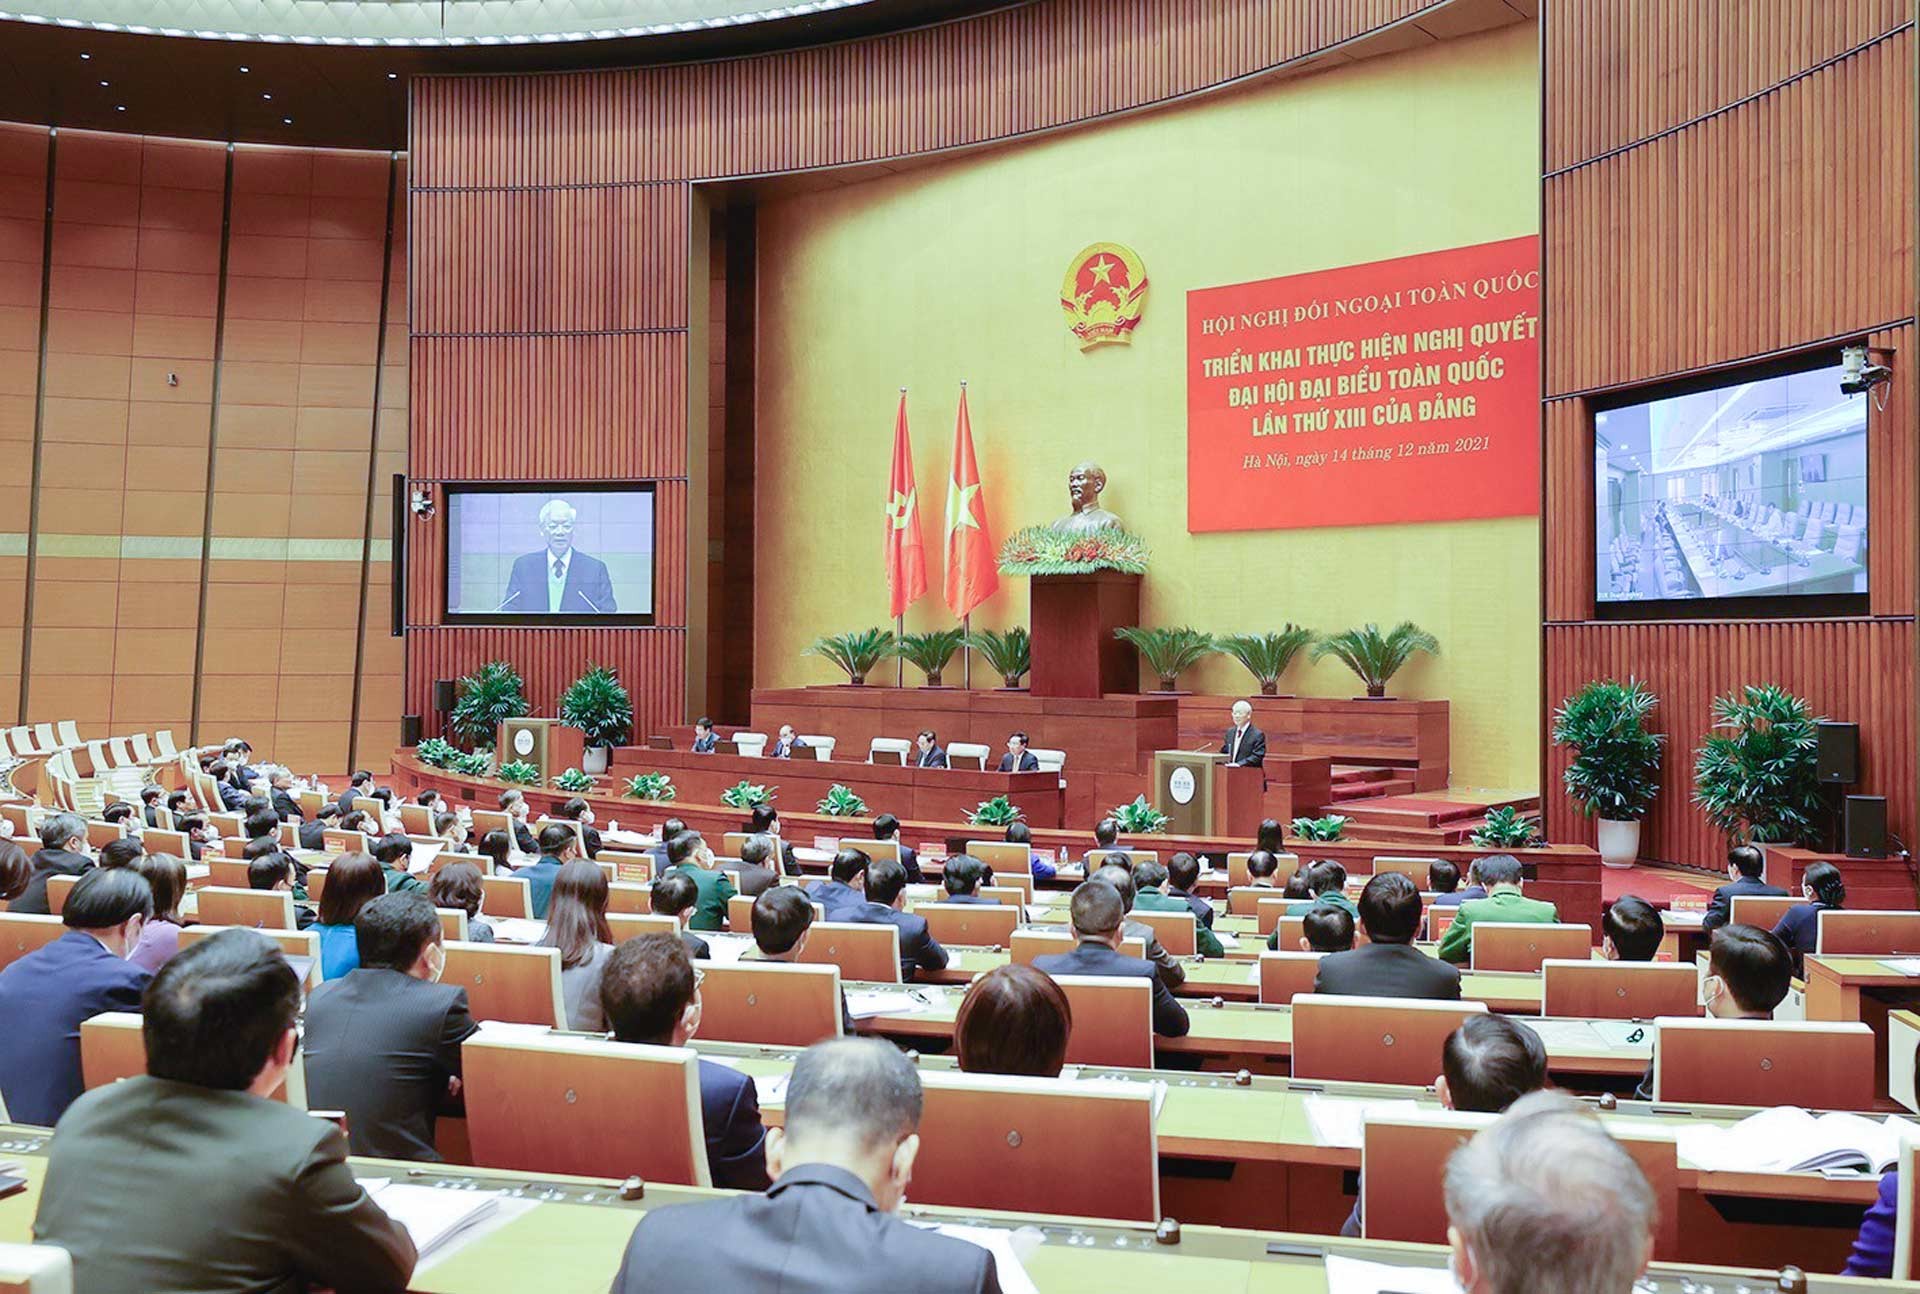 Tổng Bí thư Nguyễn Phú Trọng phát biểu chỉ đạo Hội nghị Đối ngoại toàn quốc triển khai thực hiện Nghị quyết Đại hội đại biểu toàn quốc lần thứ XIII của Đảng, ngày 14/12/2021, tại Hội trường Diên Hồng, Nhà Quốc hội ở Thủ đô Hà Nội.